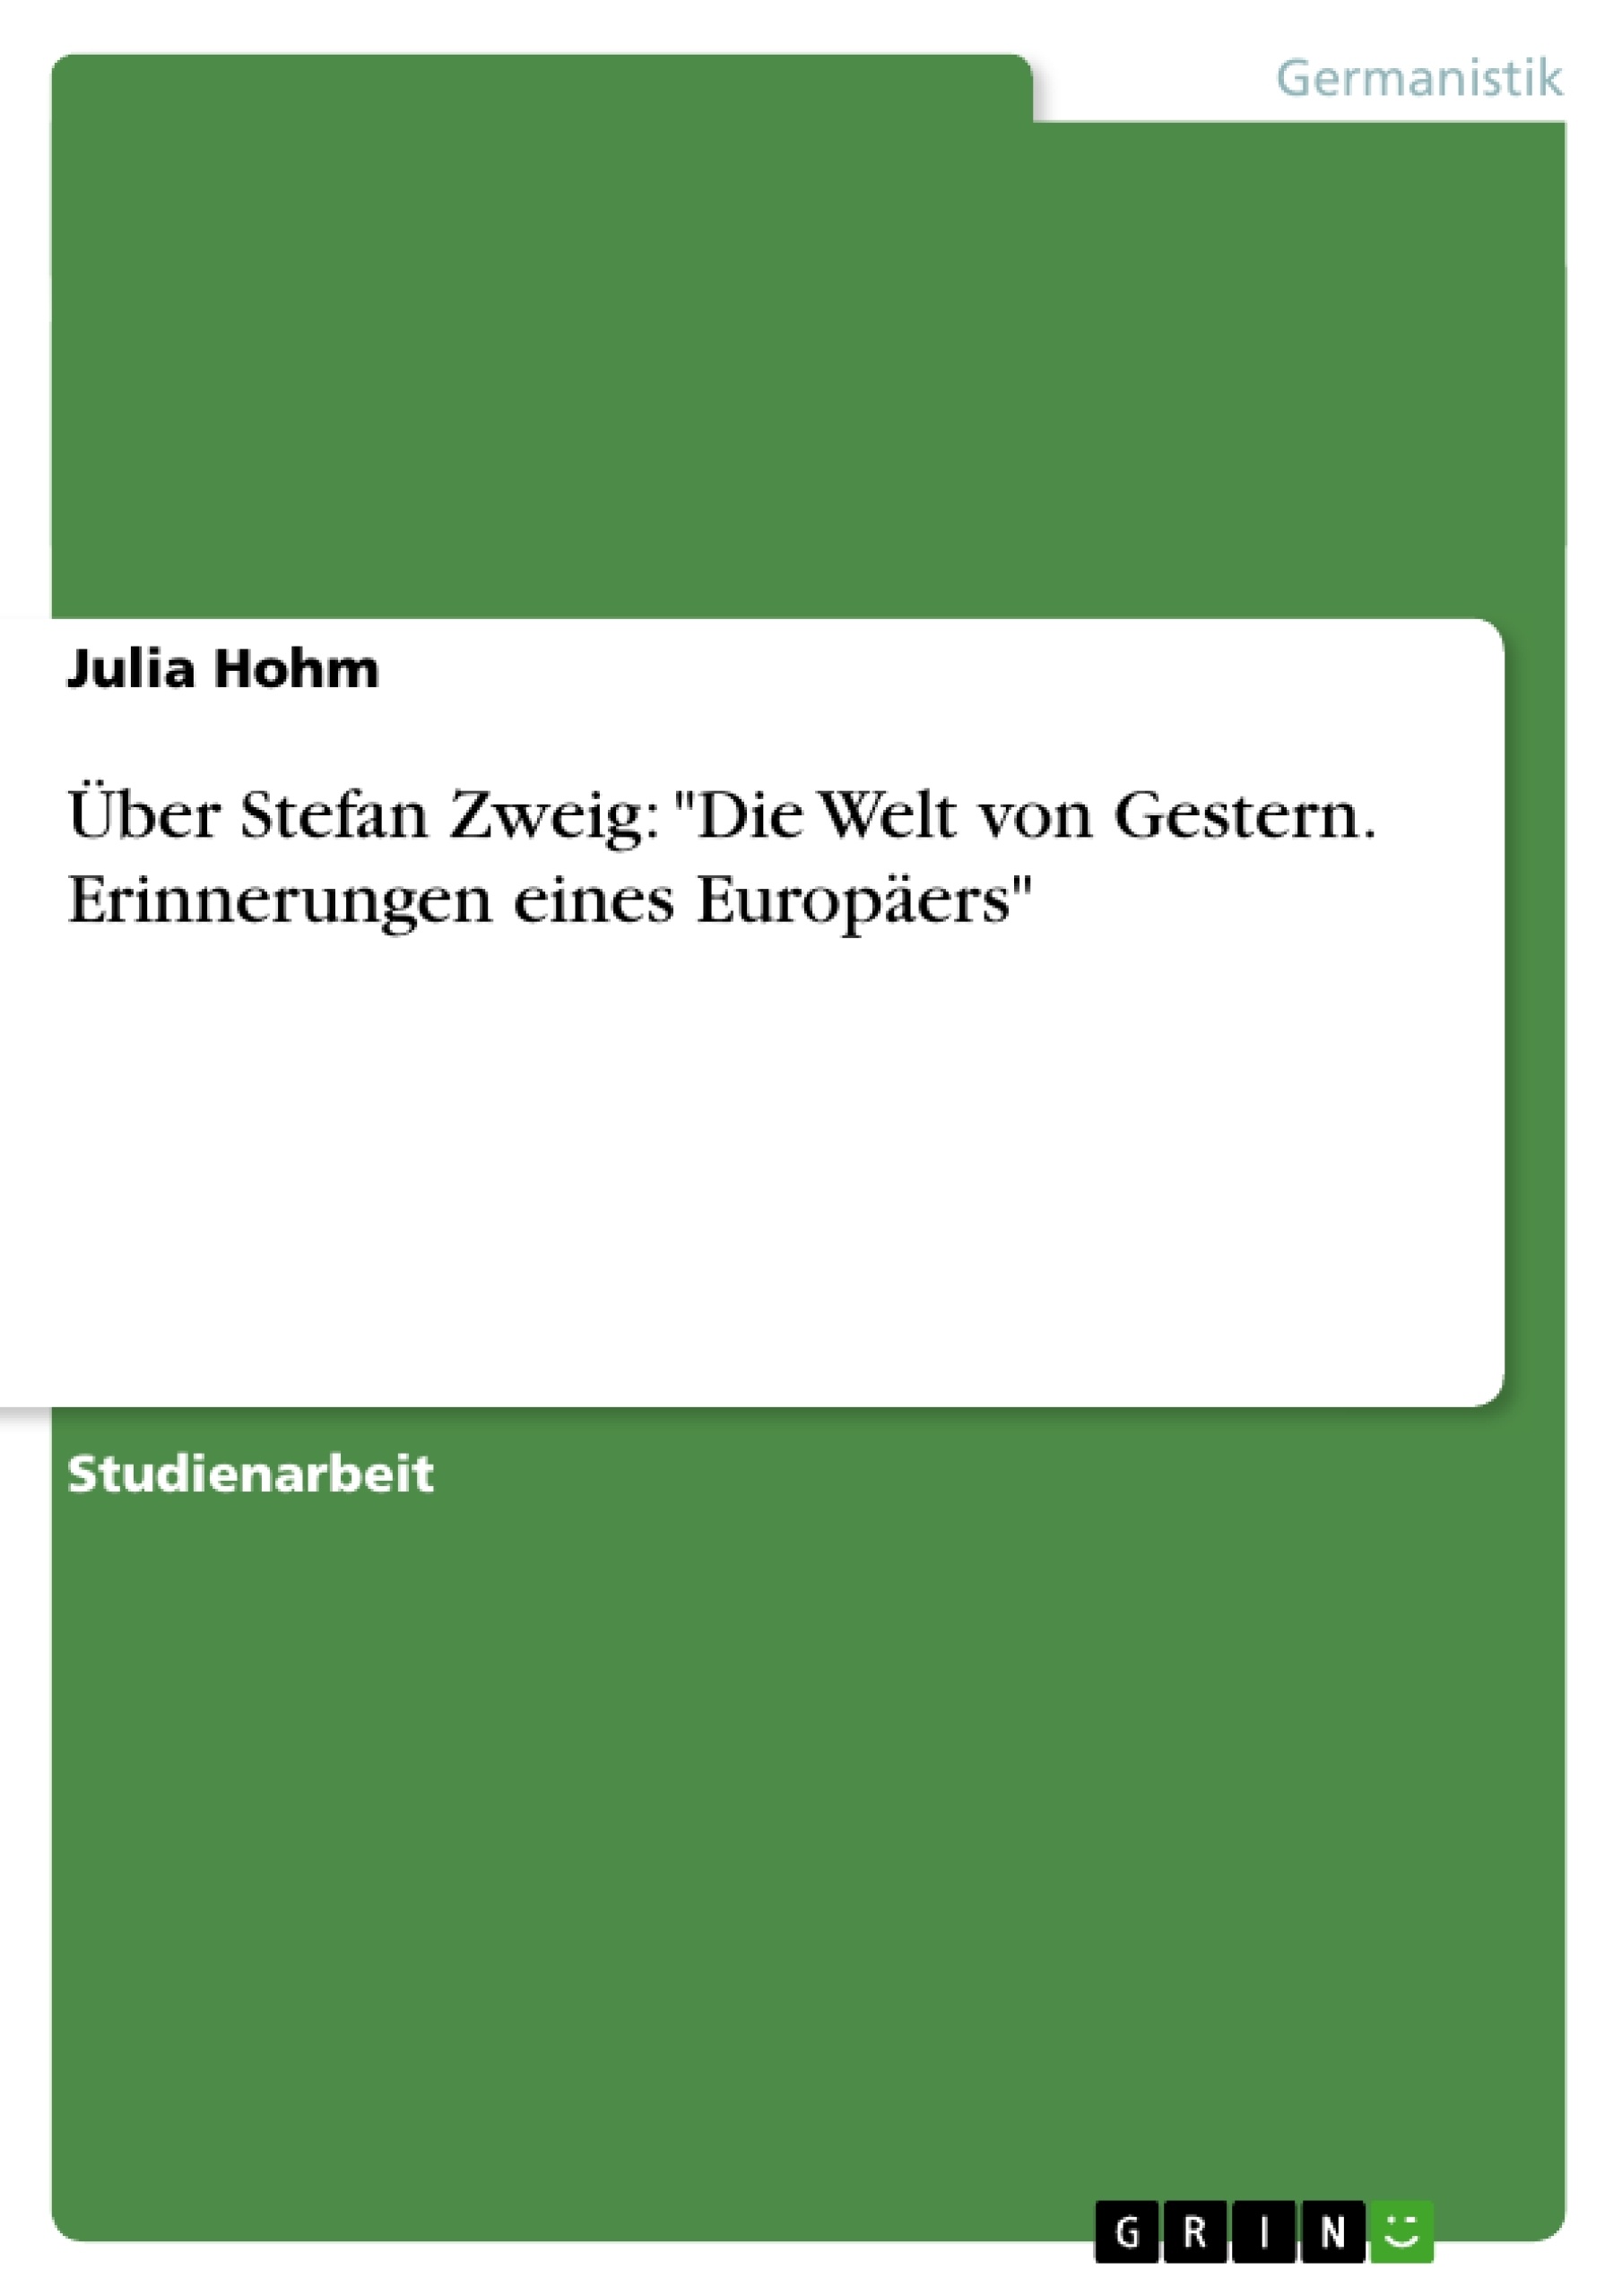 Título: Über Stefan Zweig: "Die Welt von Gestern. Erinnerungen eines Europäers"